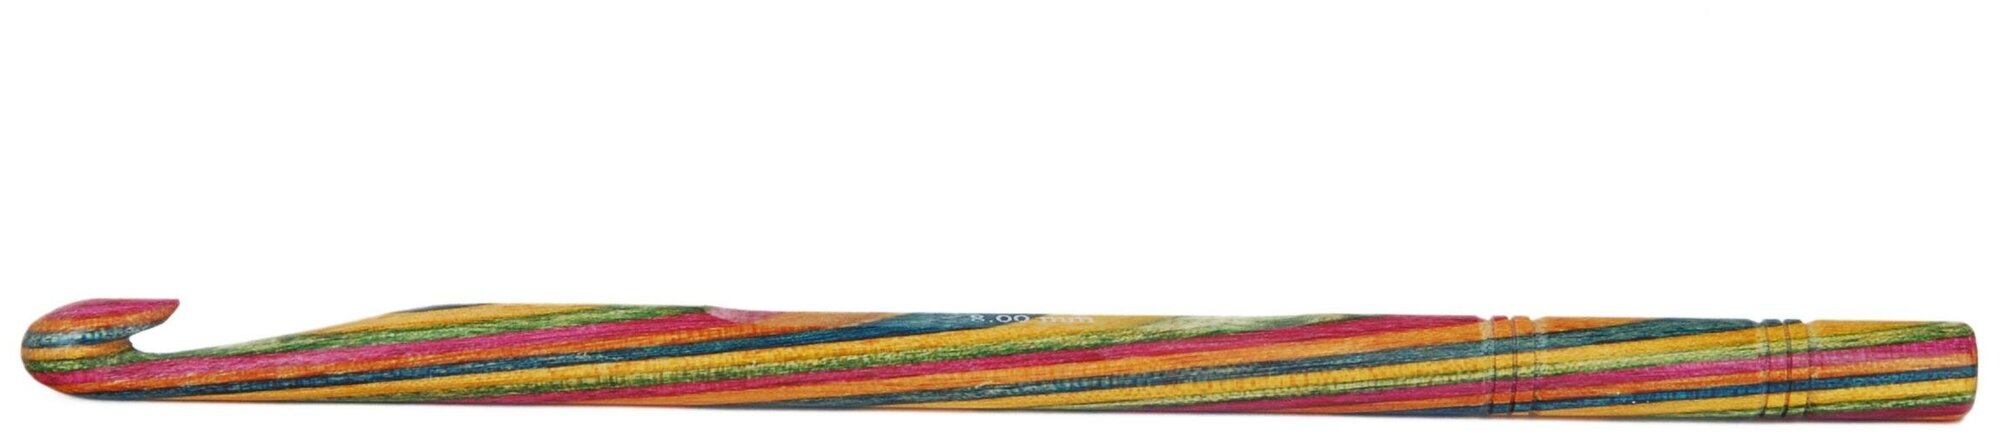 20706 Крючок вязальный односторонний Symfonie Wood KnitPro, 15 см, 4.50 мм